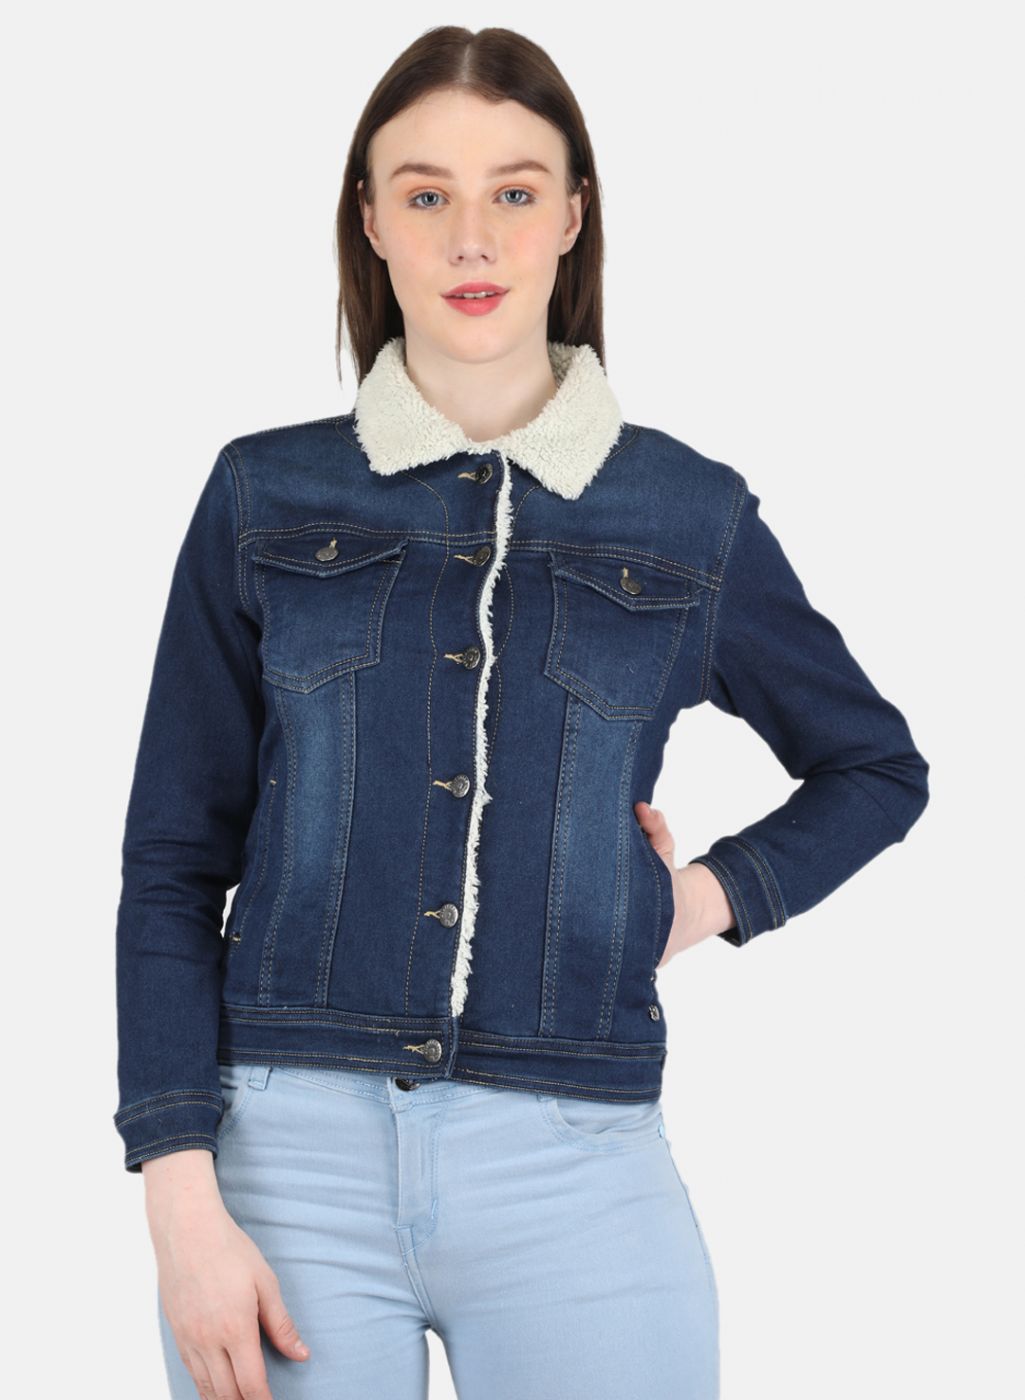 120 Jean jacket ideas | fashion, jean jacket, style